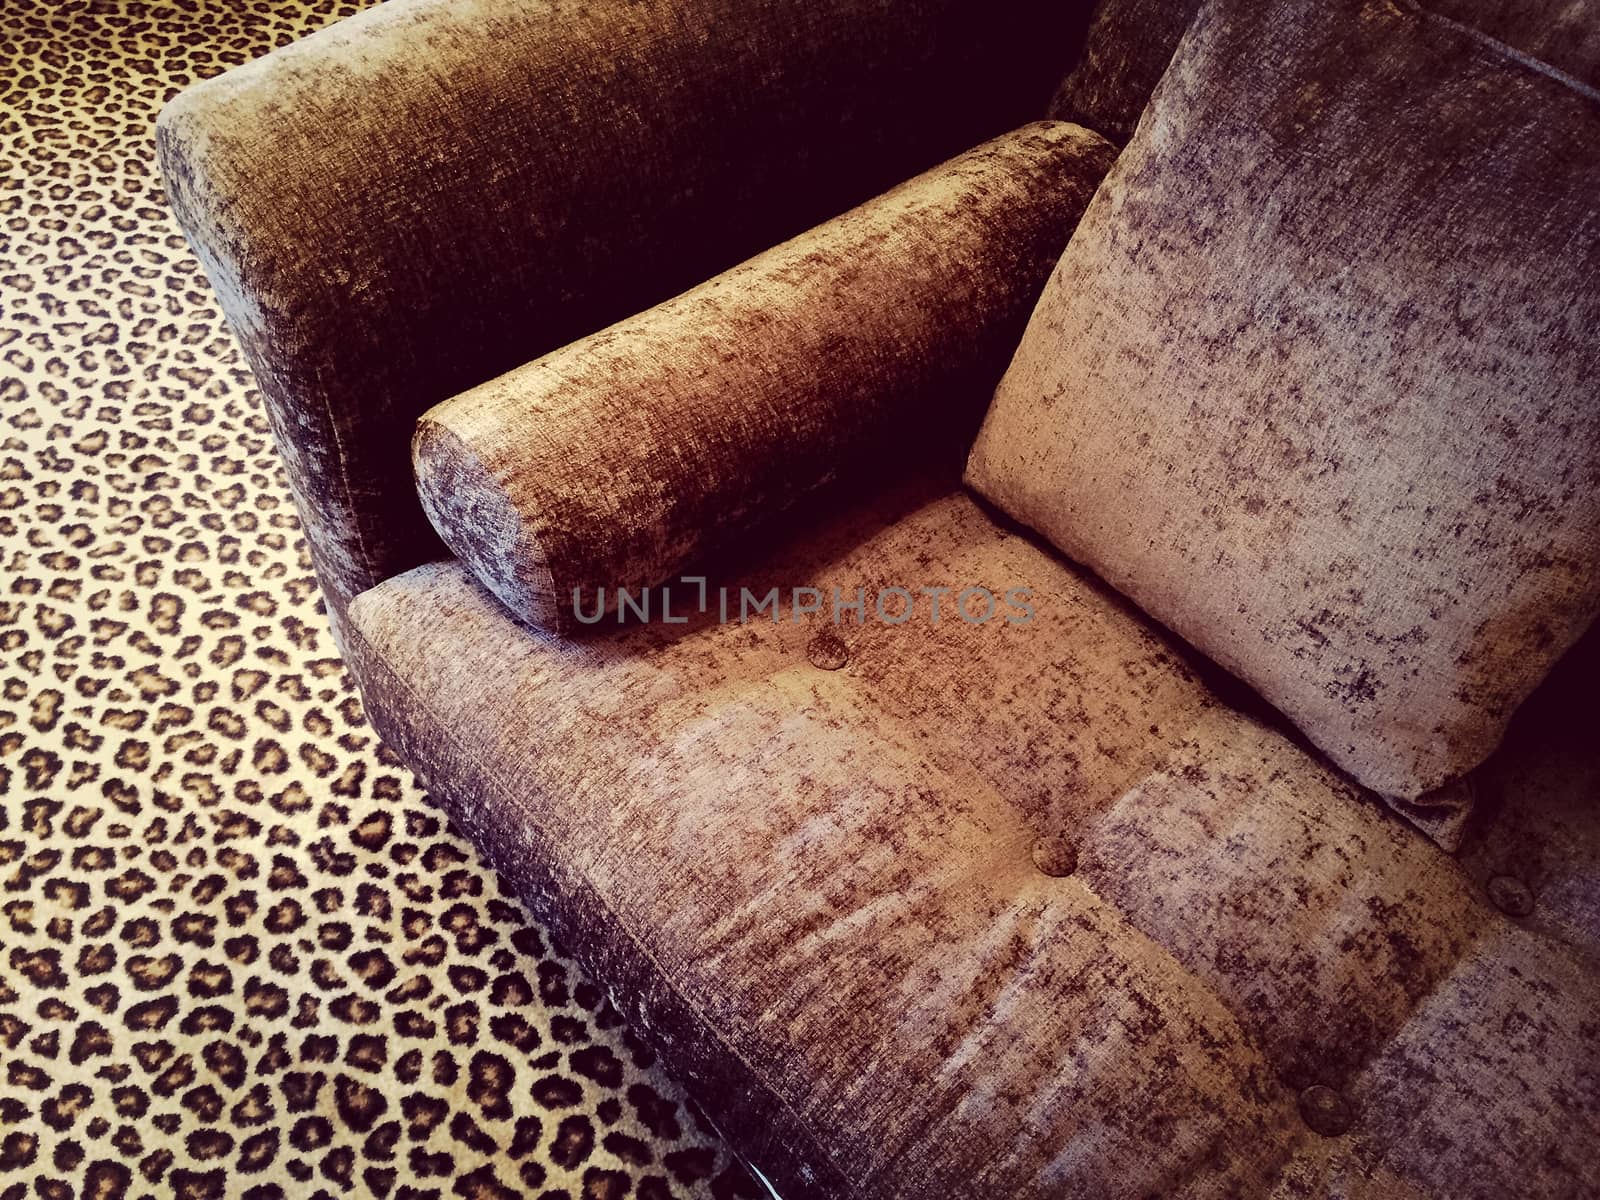 Velvet sofa on leopard carpet by anikasalsera